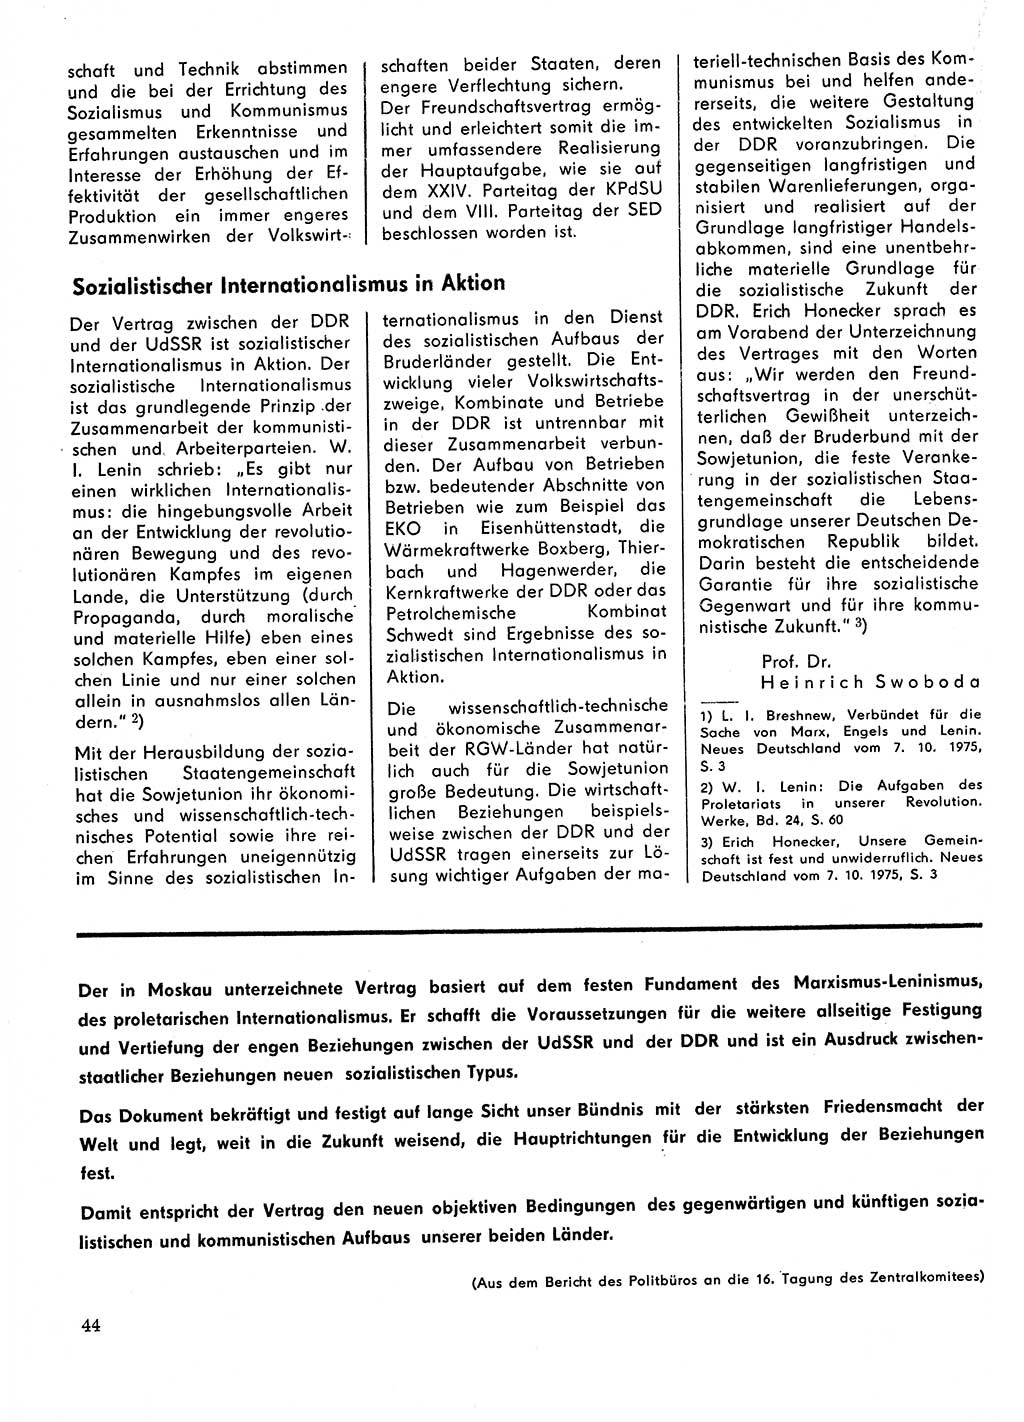 Neuer Weg (NW), Organ des Zentralkomitees (ZK) der SED (Sozialistische Einheitspartei Deutschlands) für Fragen des Parteilebens, 31. Jahrgang [Deutsche Demokratische Republik (DDR)] 1976, Seite 44 (NW ZK SED DDR 1976, S. 44)